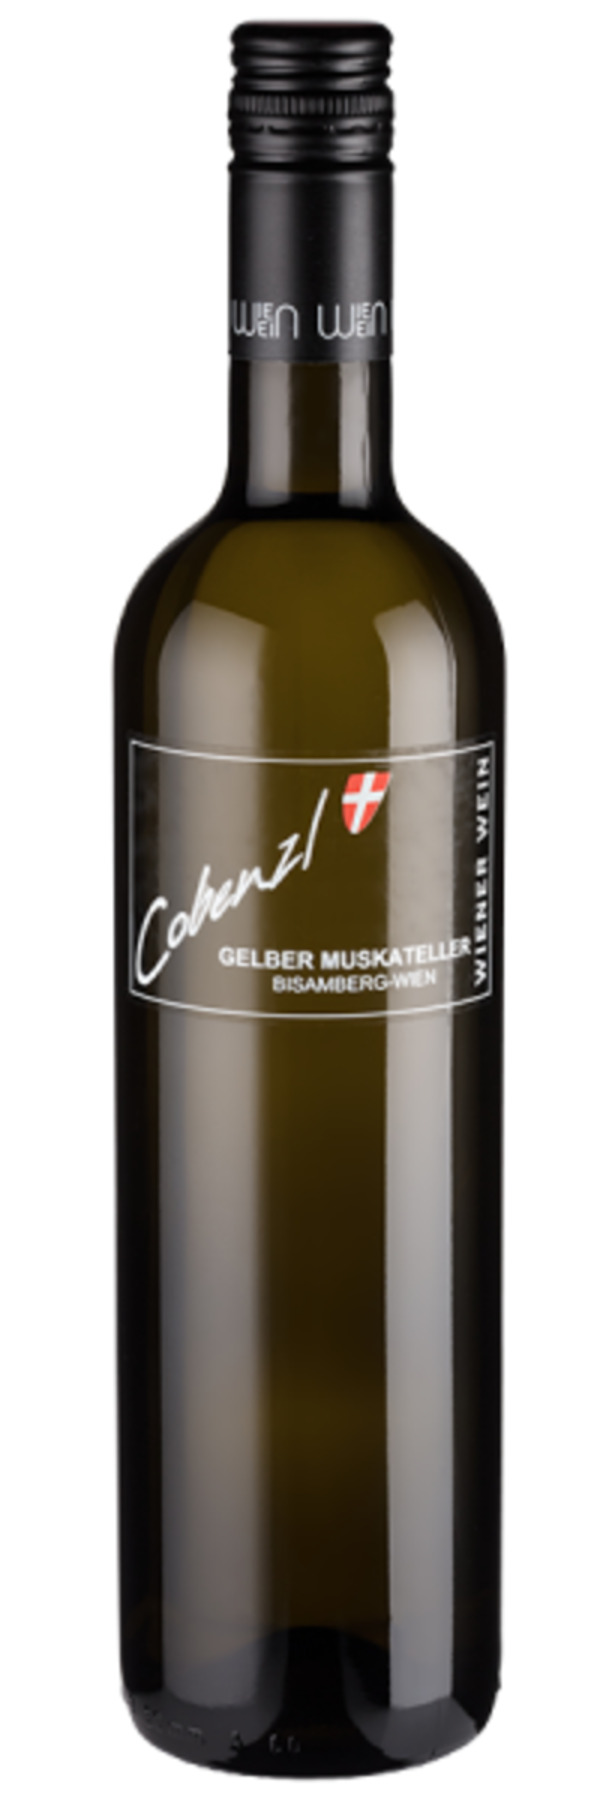 Bild 1 von Gelber Muskateller Bisamberg - 2022 - Cobenzl - Österreichischer Weißwein